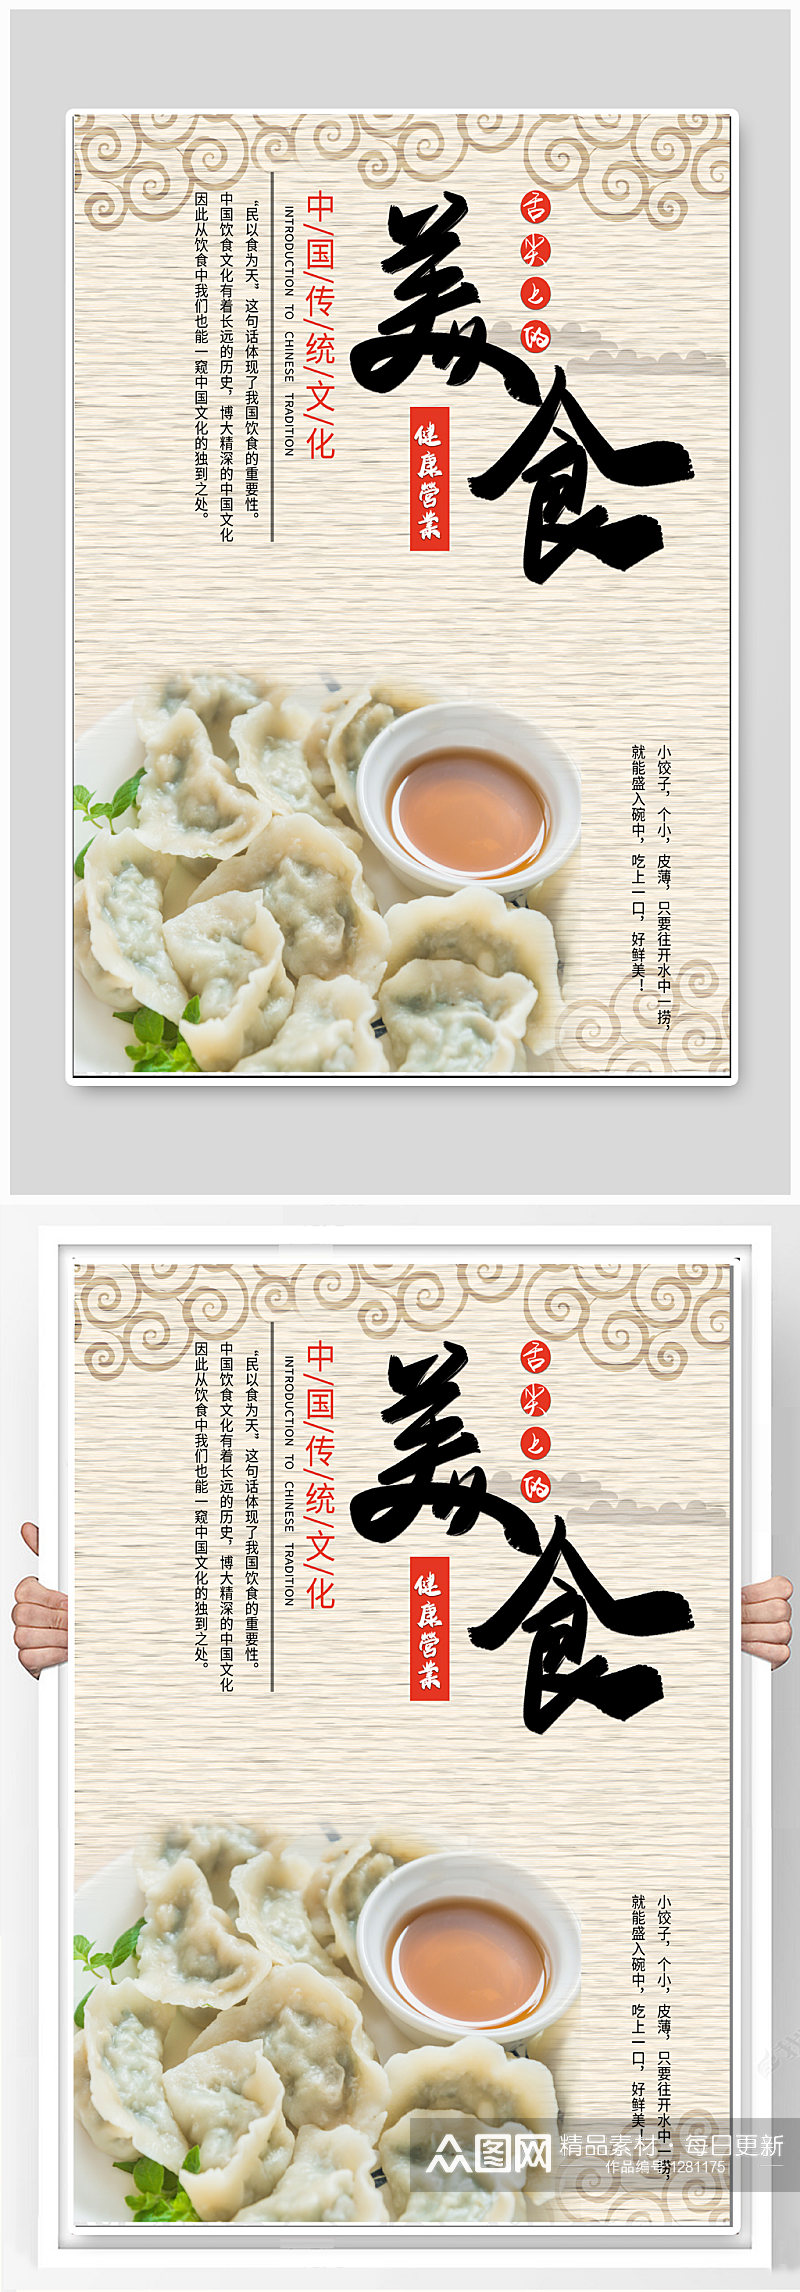 中国传统美食饺子海报素材